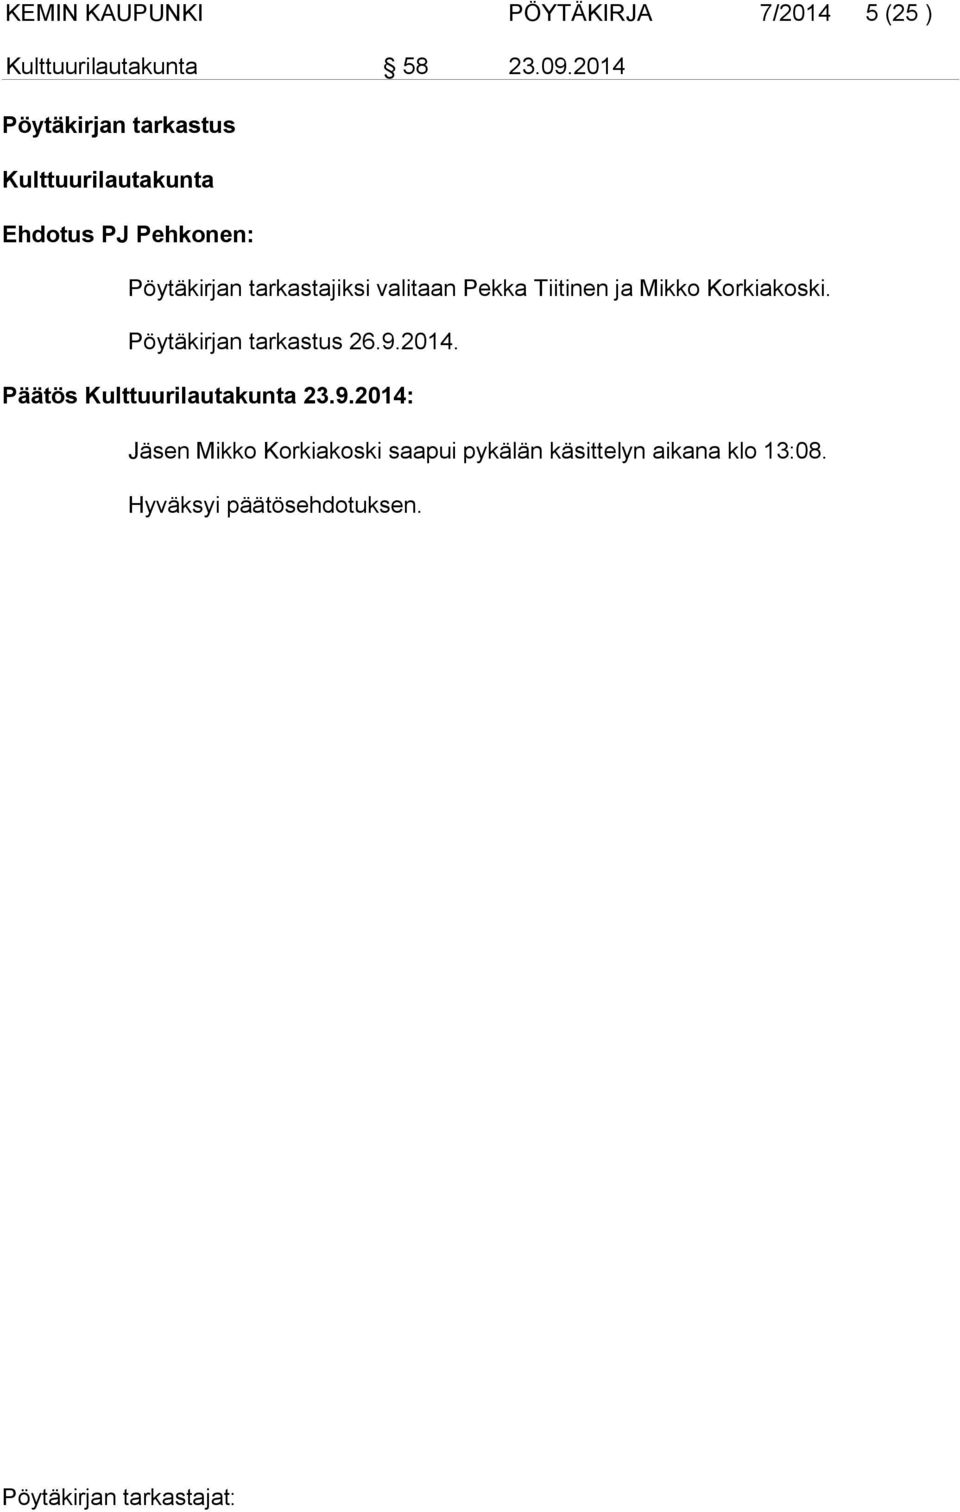 valitaan Pekka Tiitinen ja Mikko Korkiakoski. Pöytäkirjan tarkastus 26.9.2014.